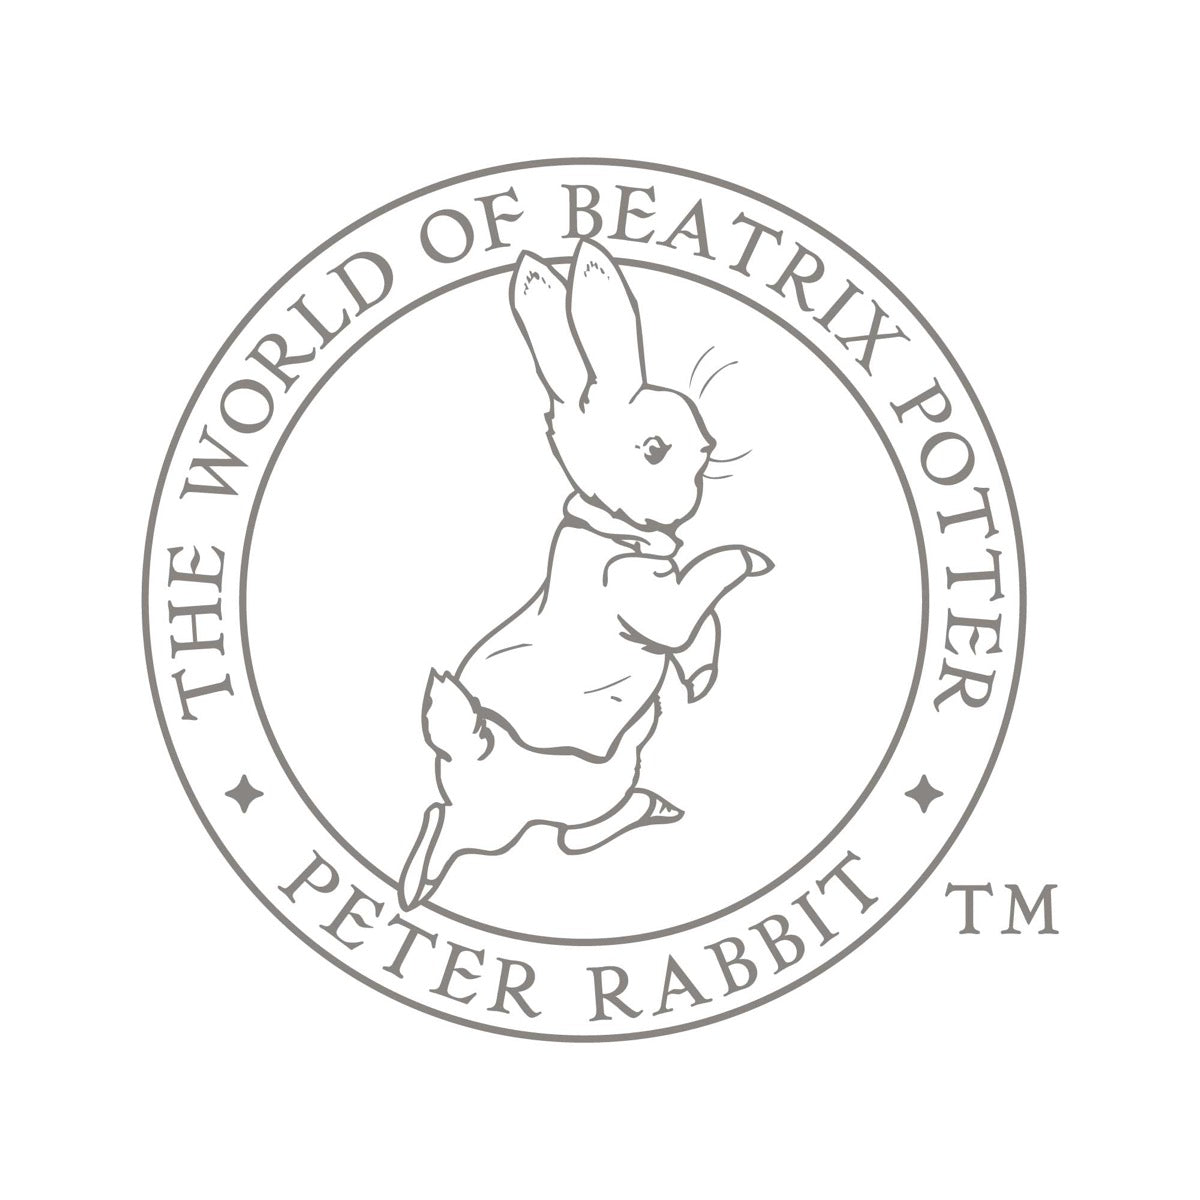 Peter Rabbit Print - Wreath Personalised Name & Date Print